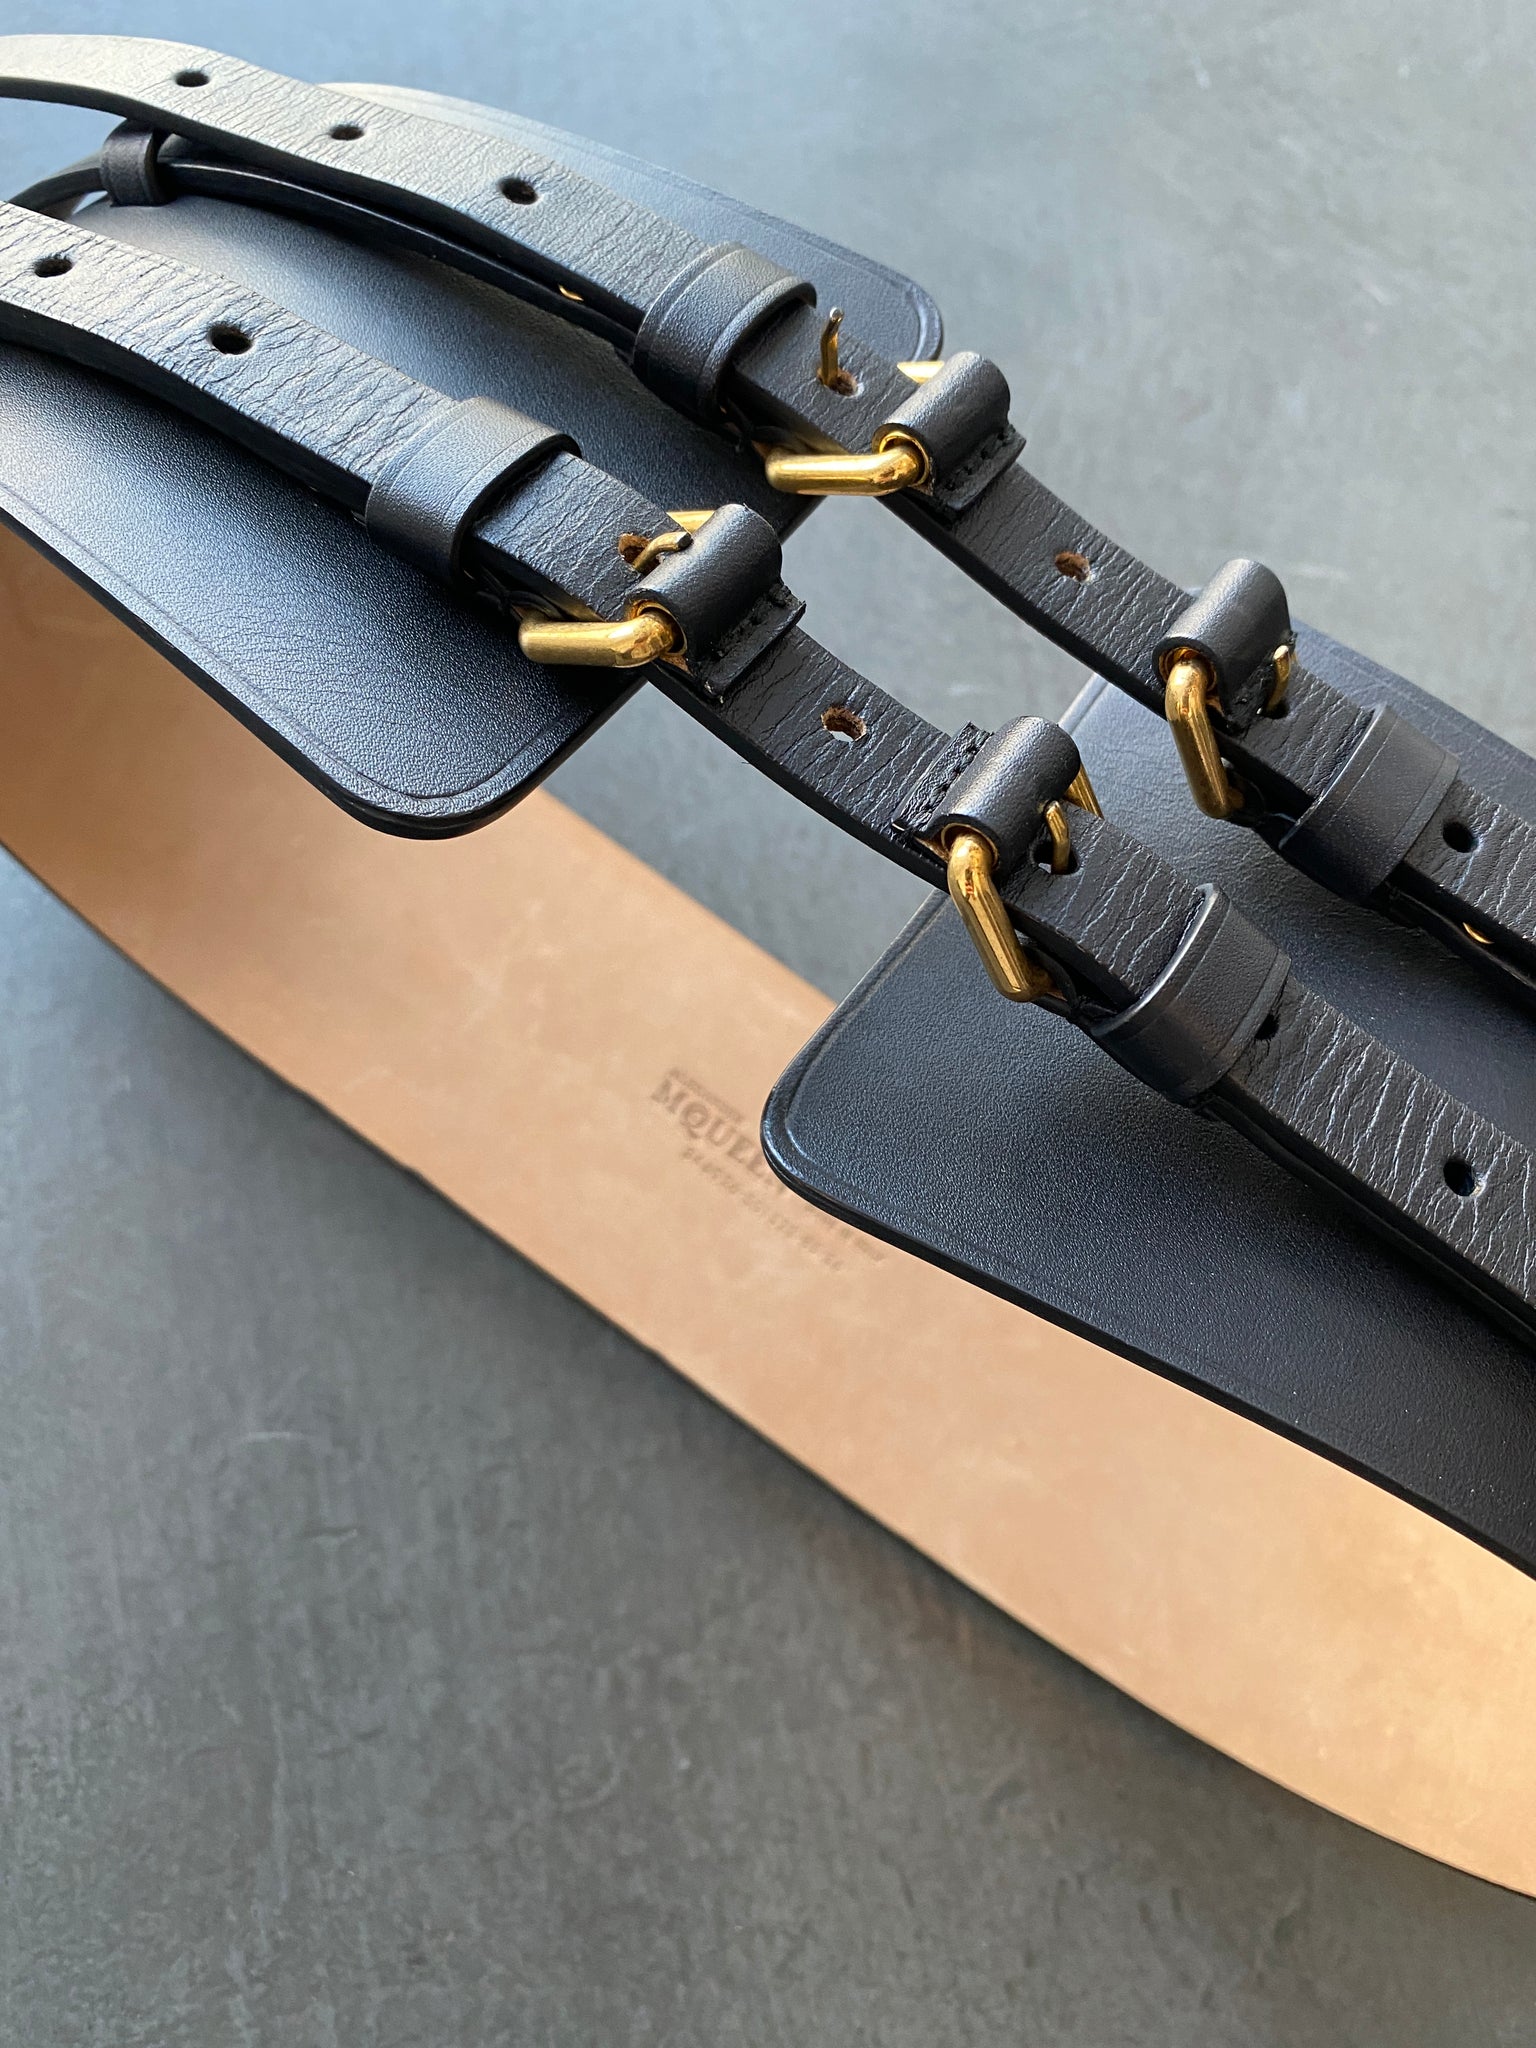 Leather Bondage Belt